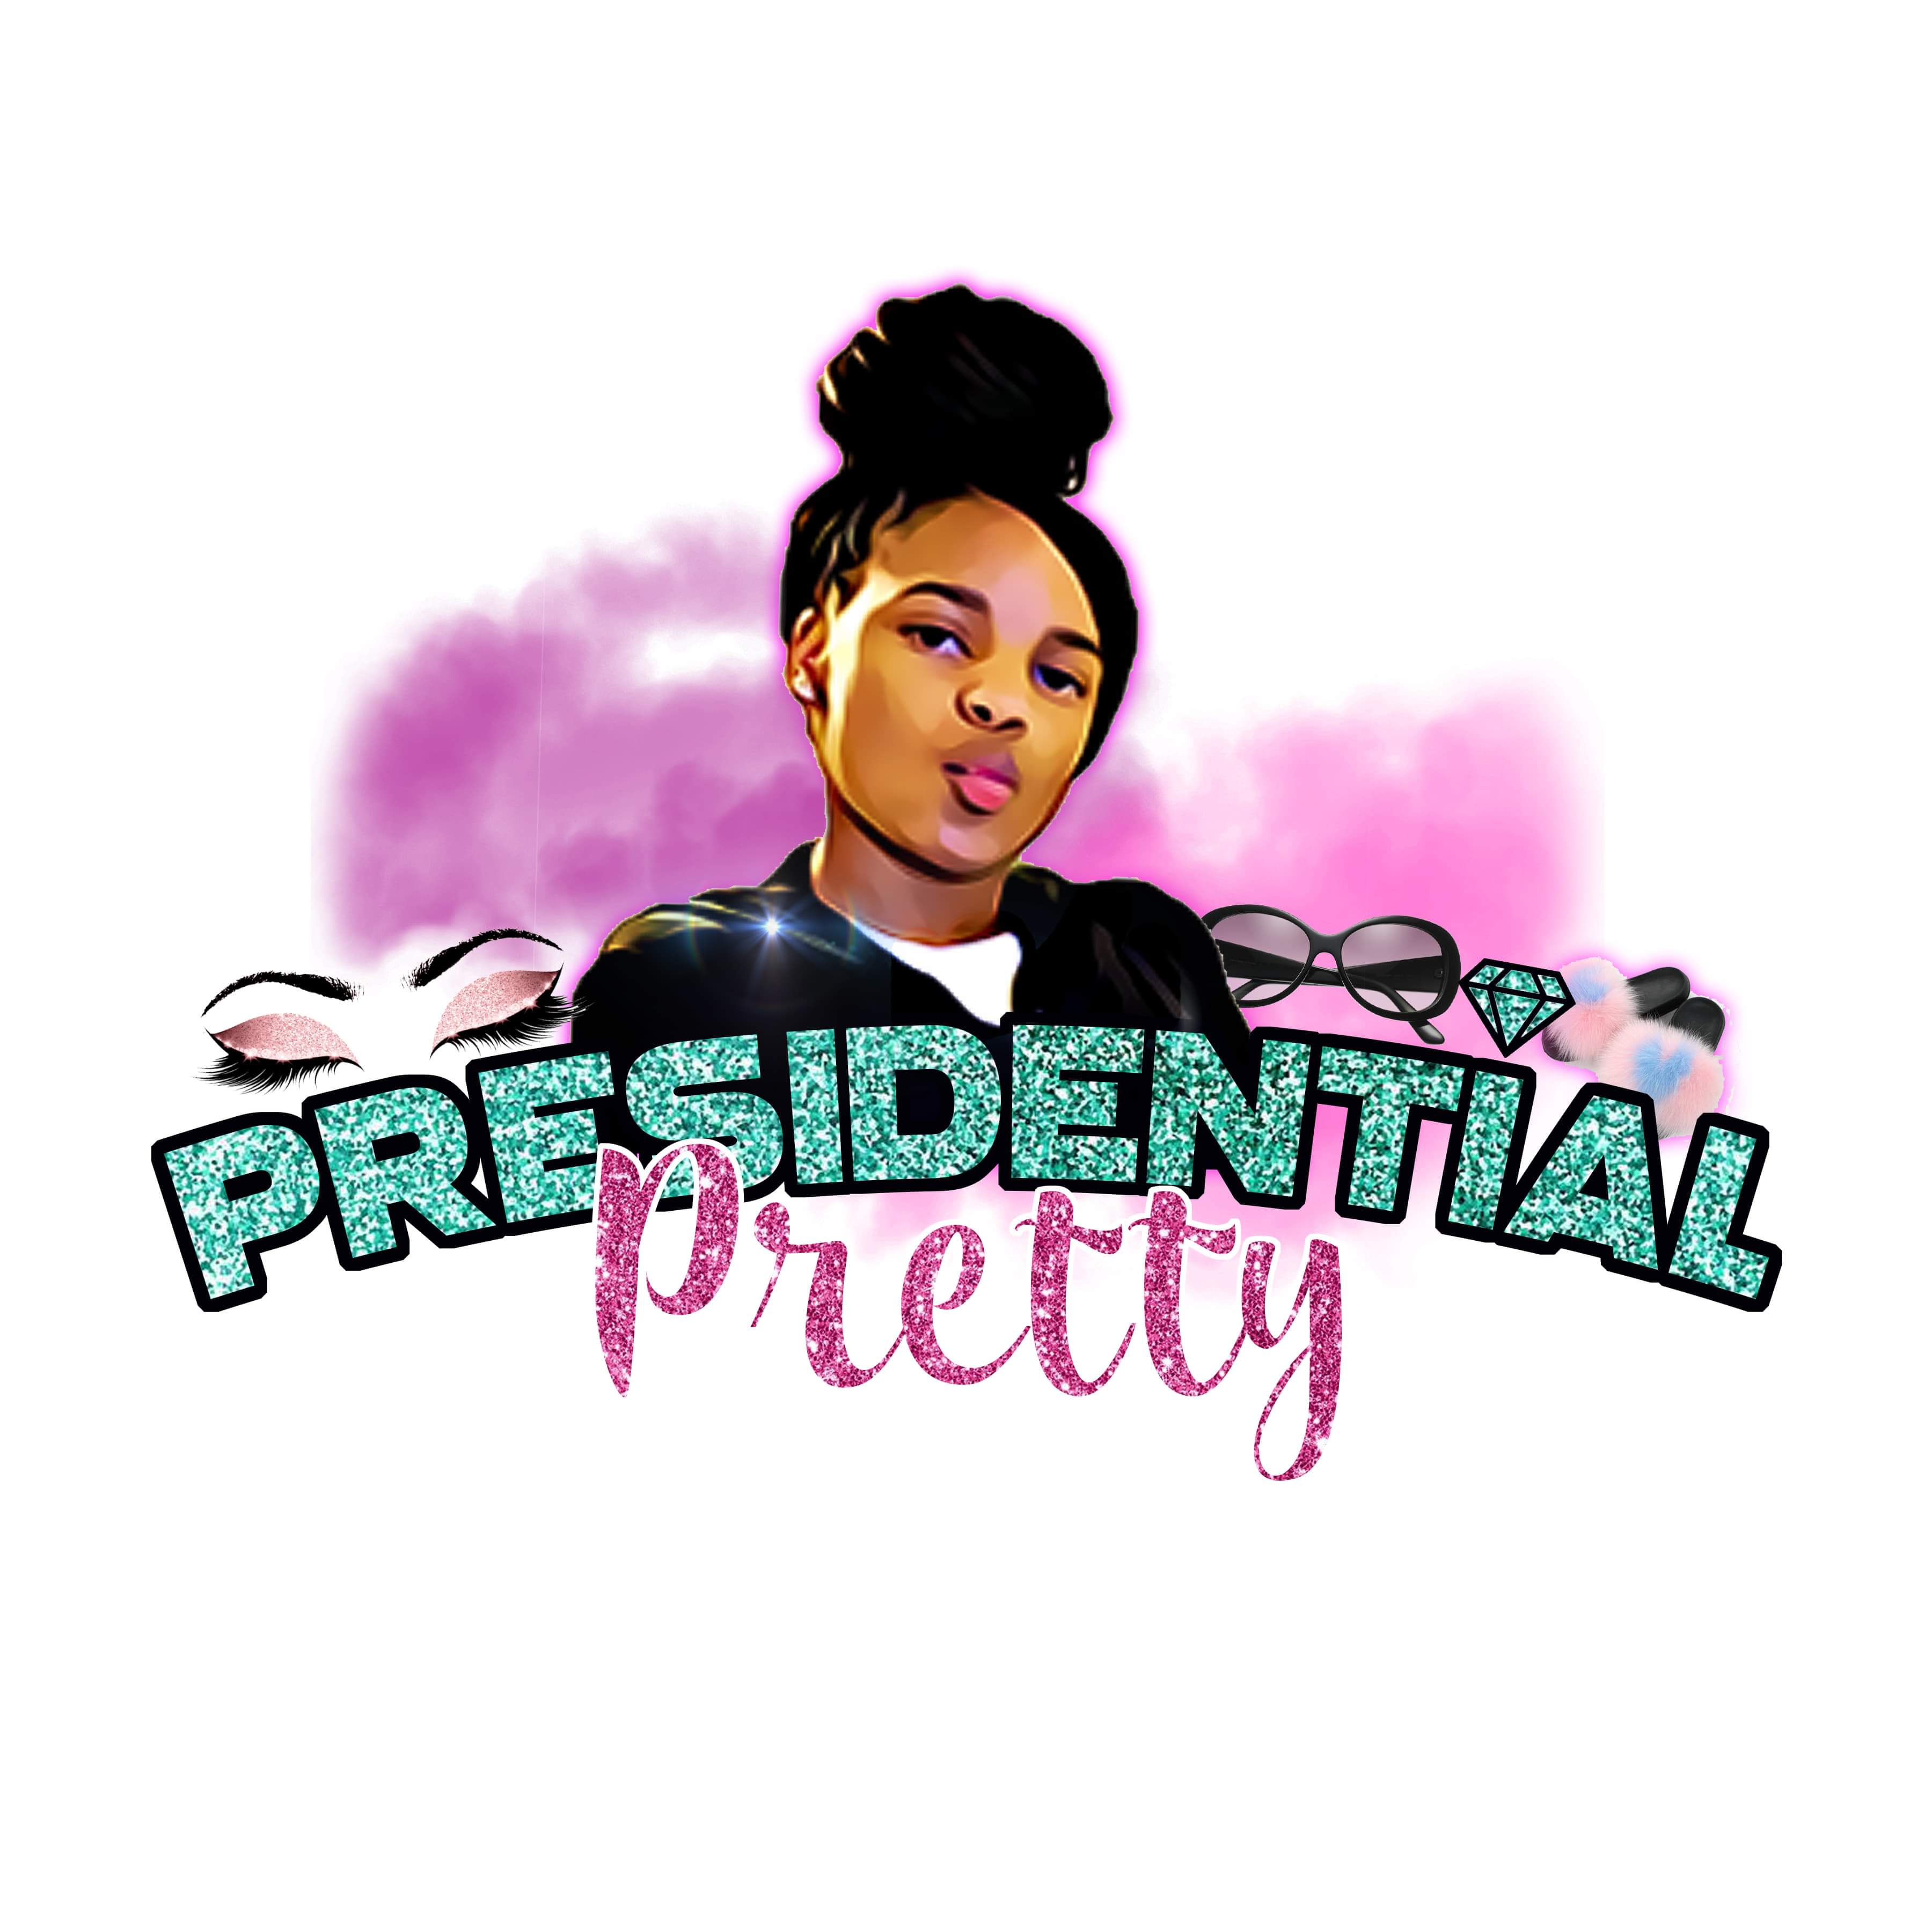 Presidential Pretty